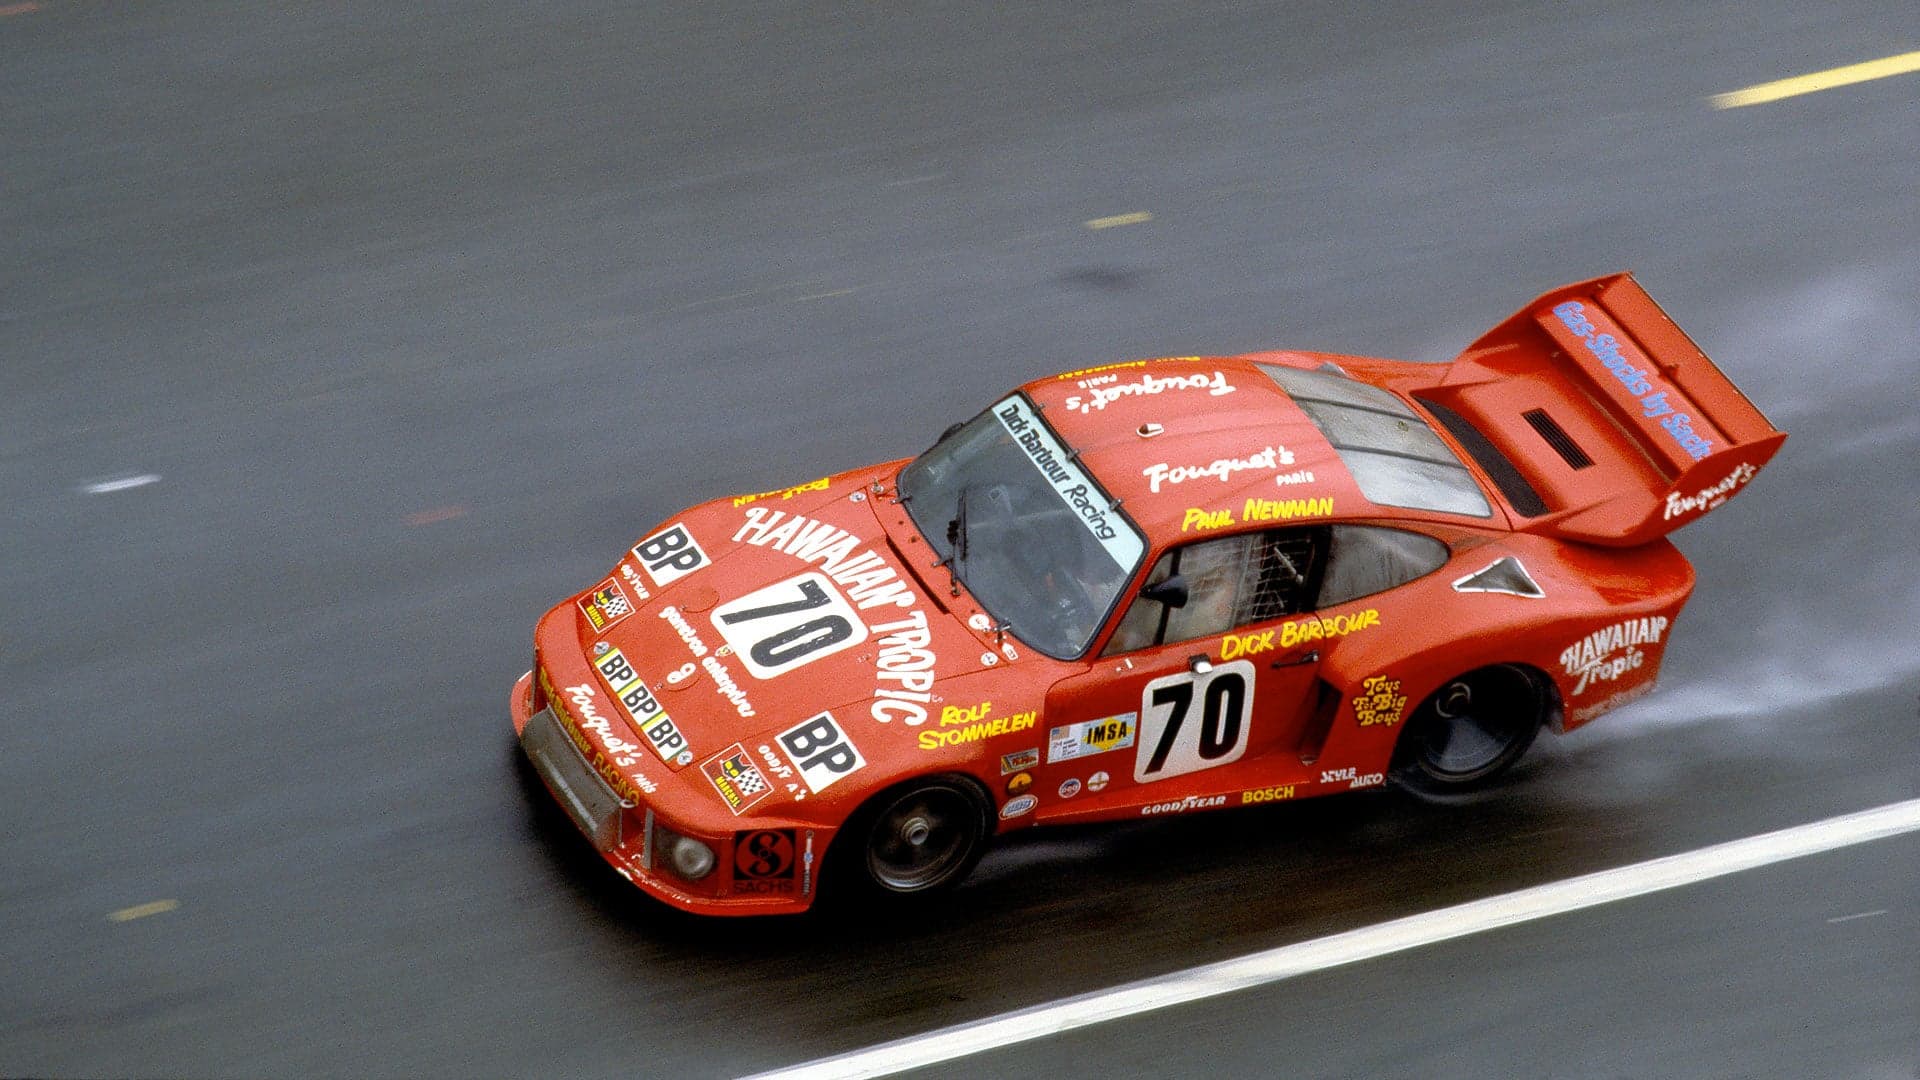 Paul Newman’s Porsche 935 Le Mans Race Car Could Soon Be Yours